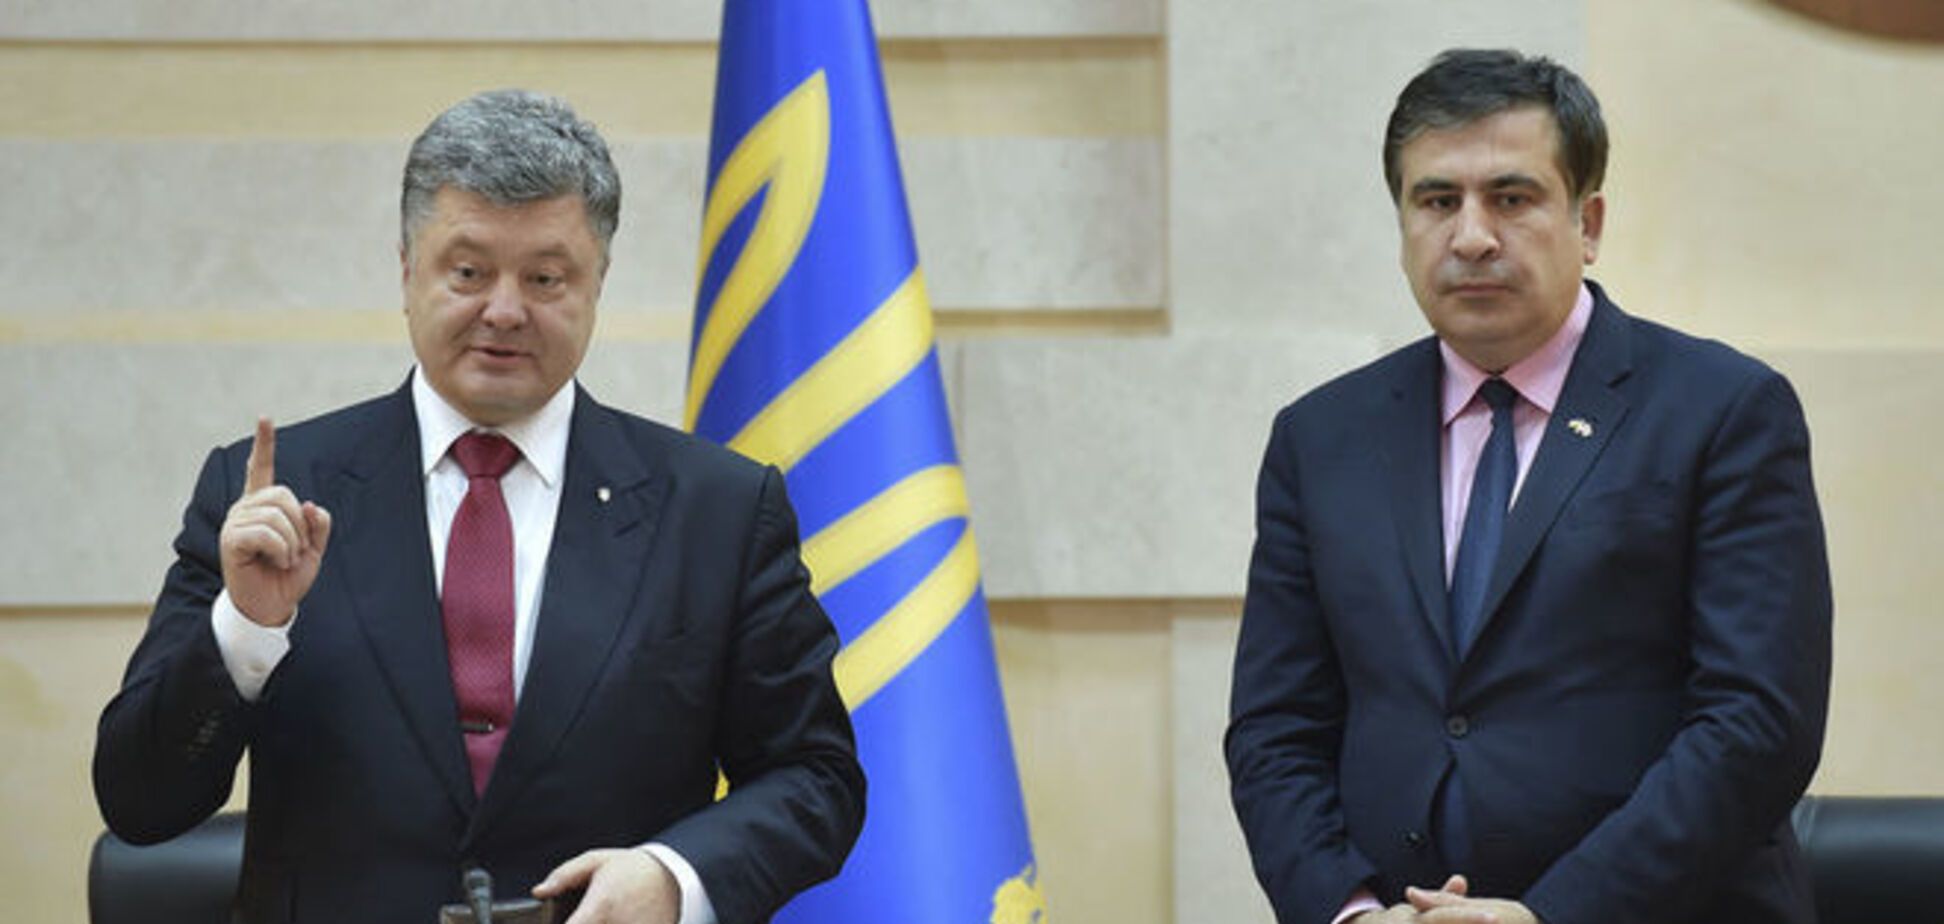 Пономарь назвал три причины назначения Саакашвили